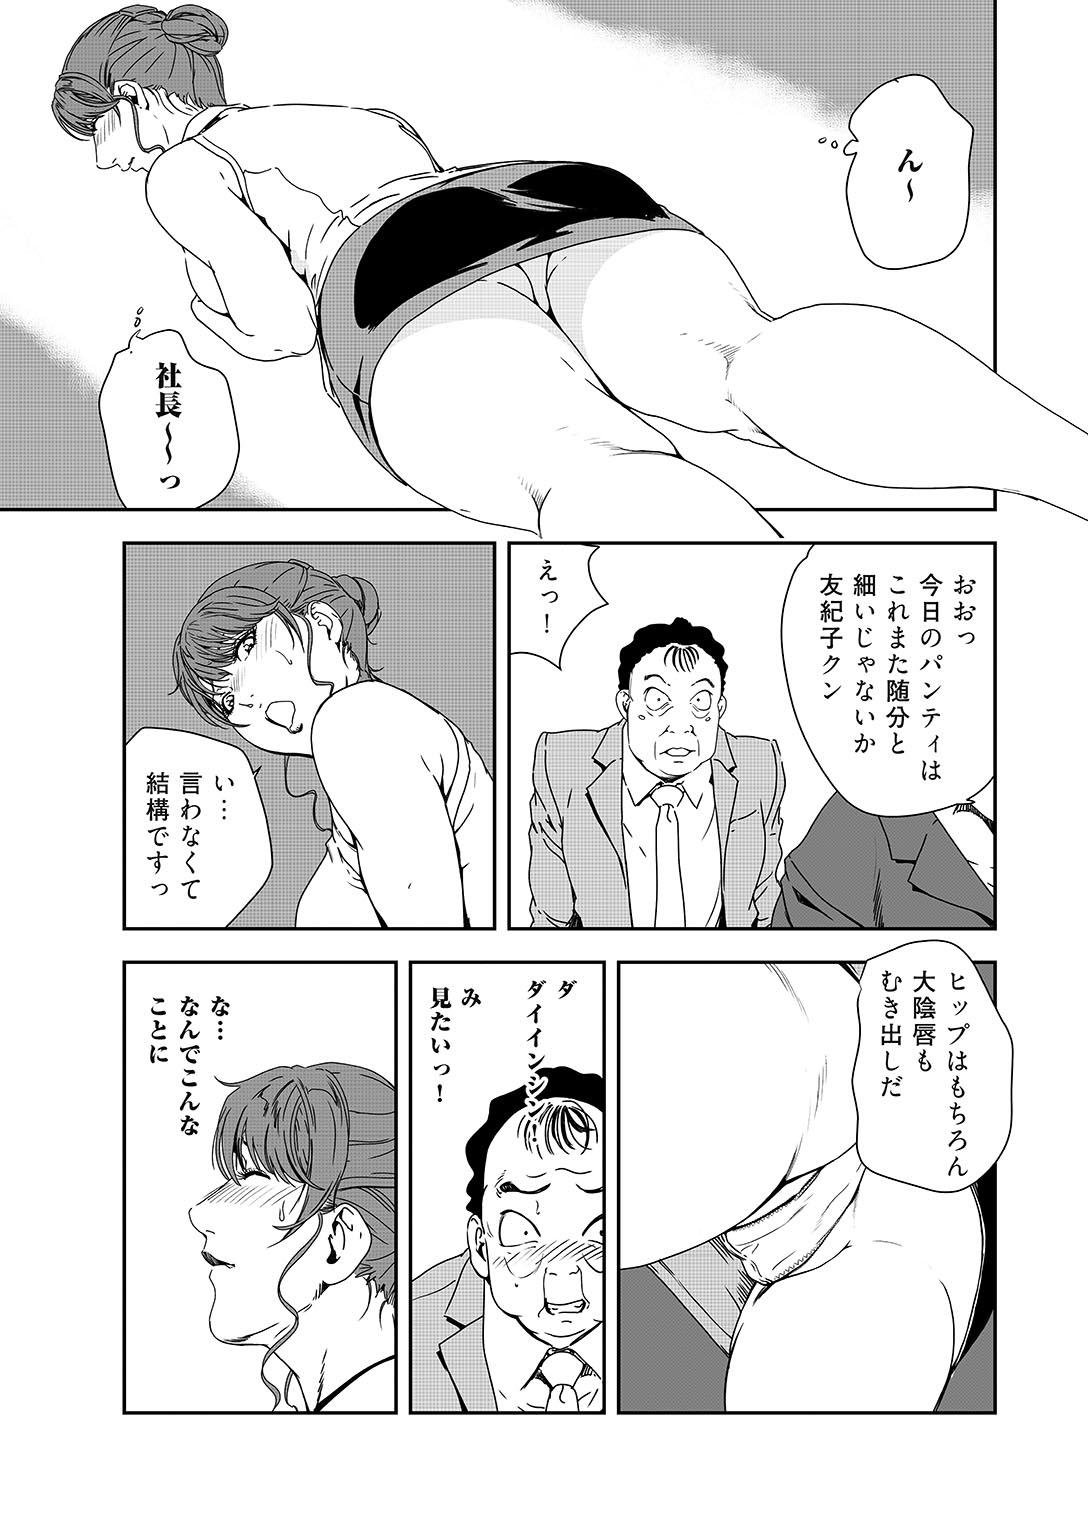 Sextoy Nikuhisyo Yukiko 38 Blow Jobs - Page 10